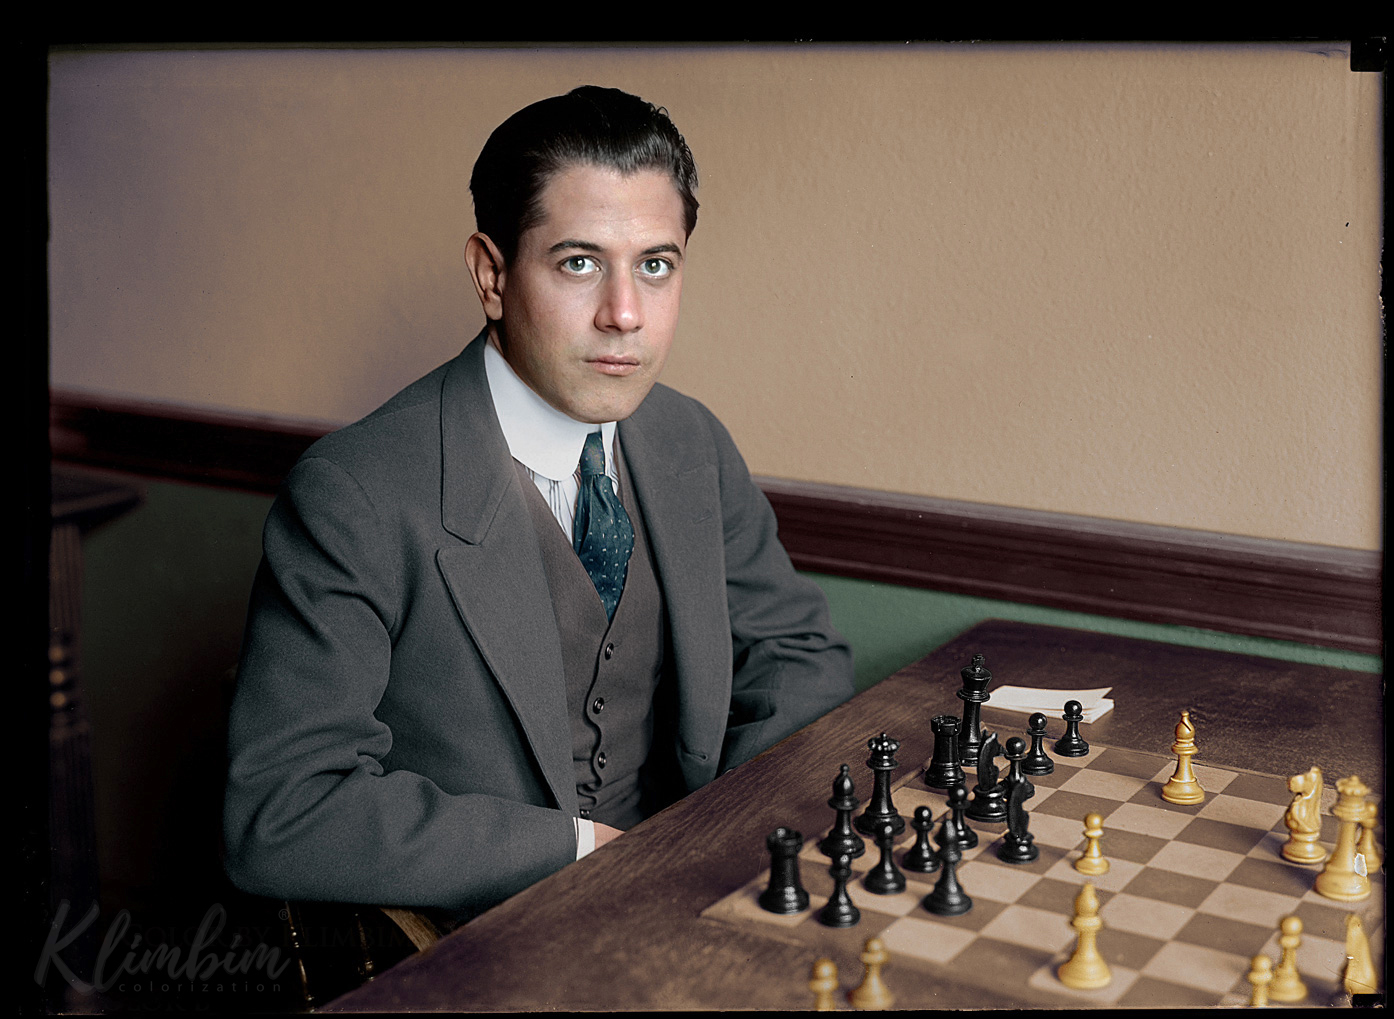 خوزه رائول کاپابلانکا- سومین قهرمان رسمی شطرنج جهان